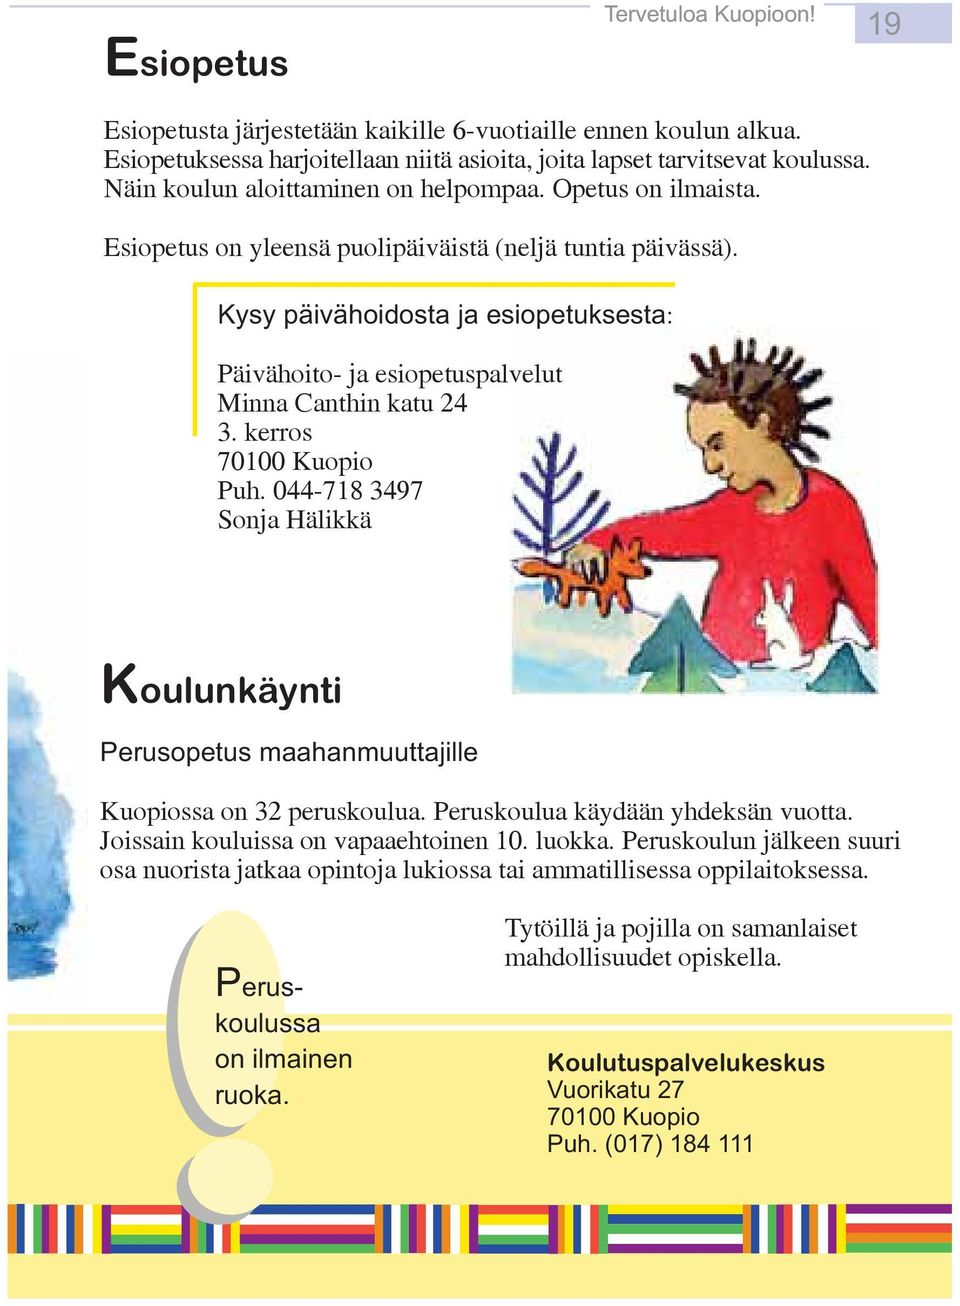 0-78 37 Sonja Hälikkä Koulunkäynti Perusopetus maahanmuuttajille Kuopiossa on 3 peruskoulua. Peruskoulua käydään yhdeksän vuotta. Joissain kouluissa on vapaaehtoinen 0. luokka.